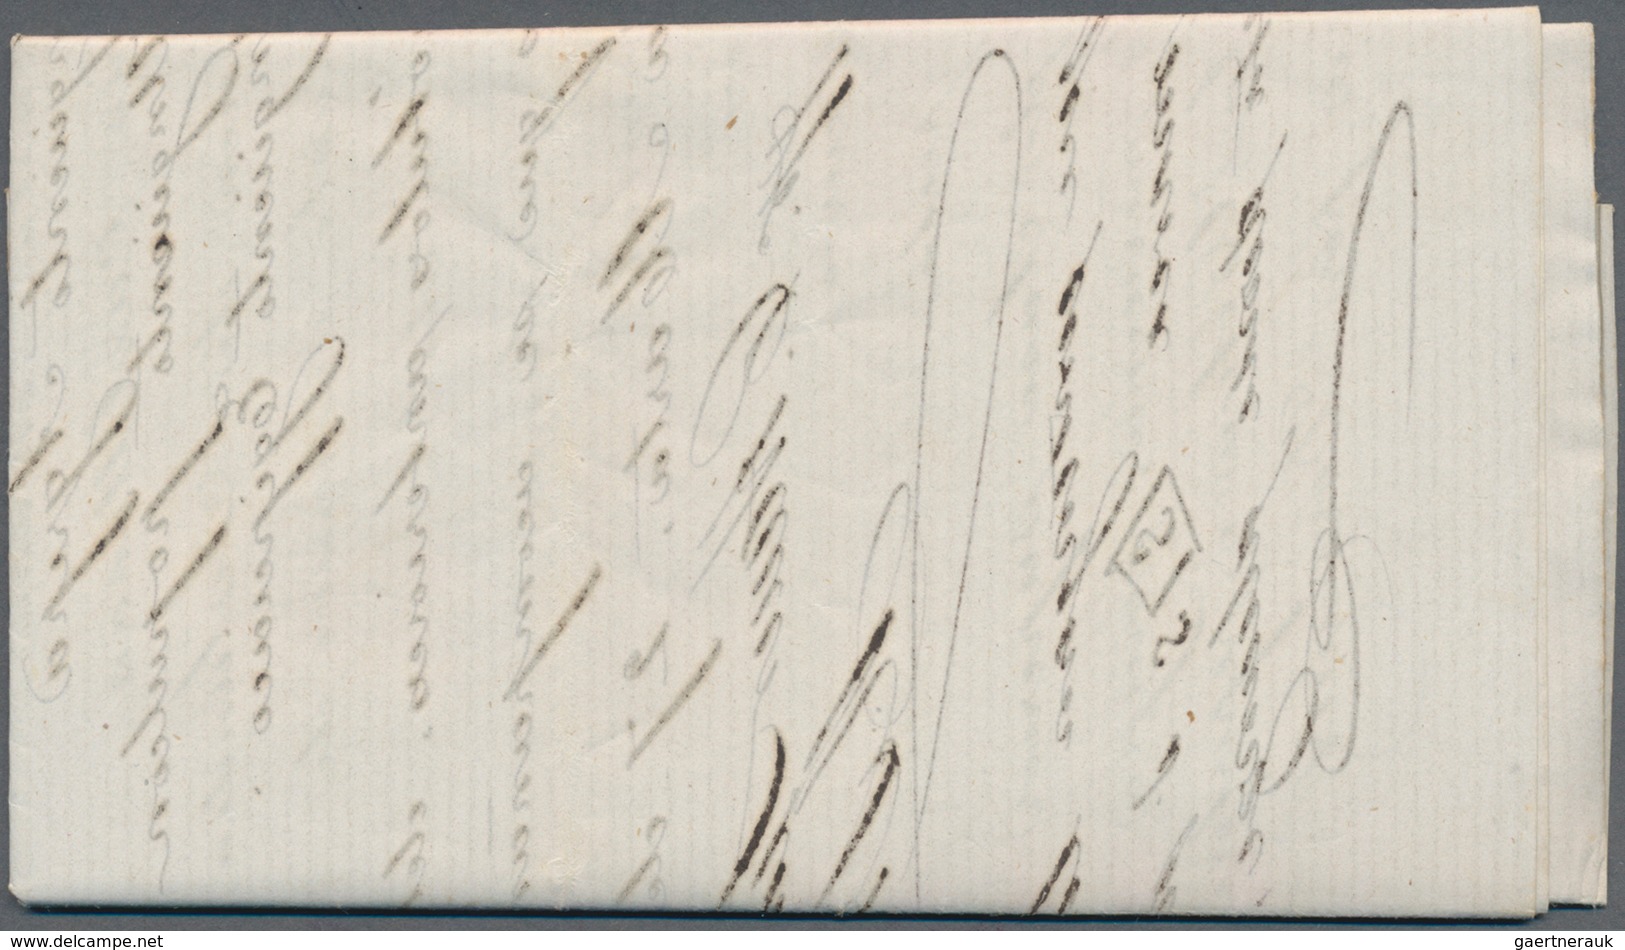 Kolumbien: 1863, Stampless Entire Letter, Dated 27 April, Addresse To Lanman & Kemp, Merchants In NE - Kolumbien